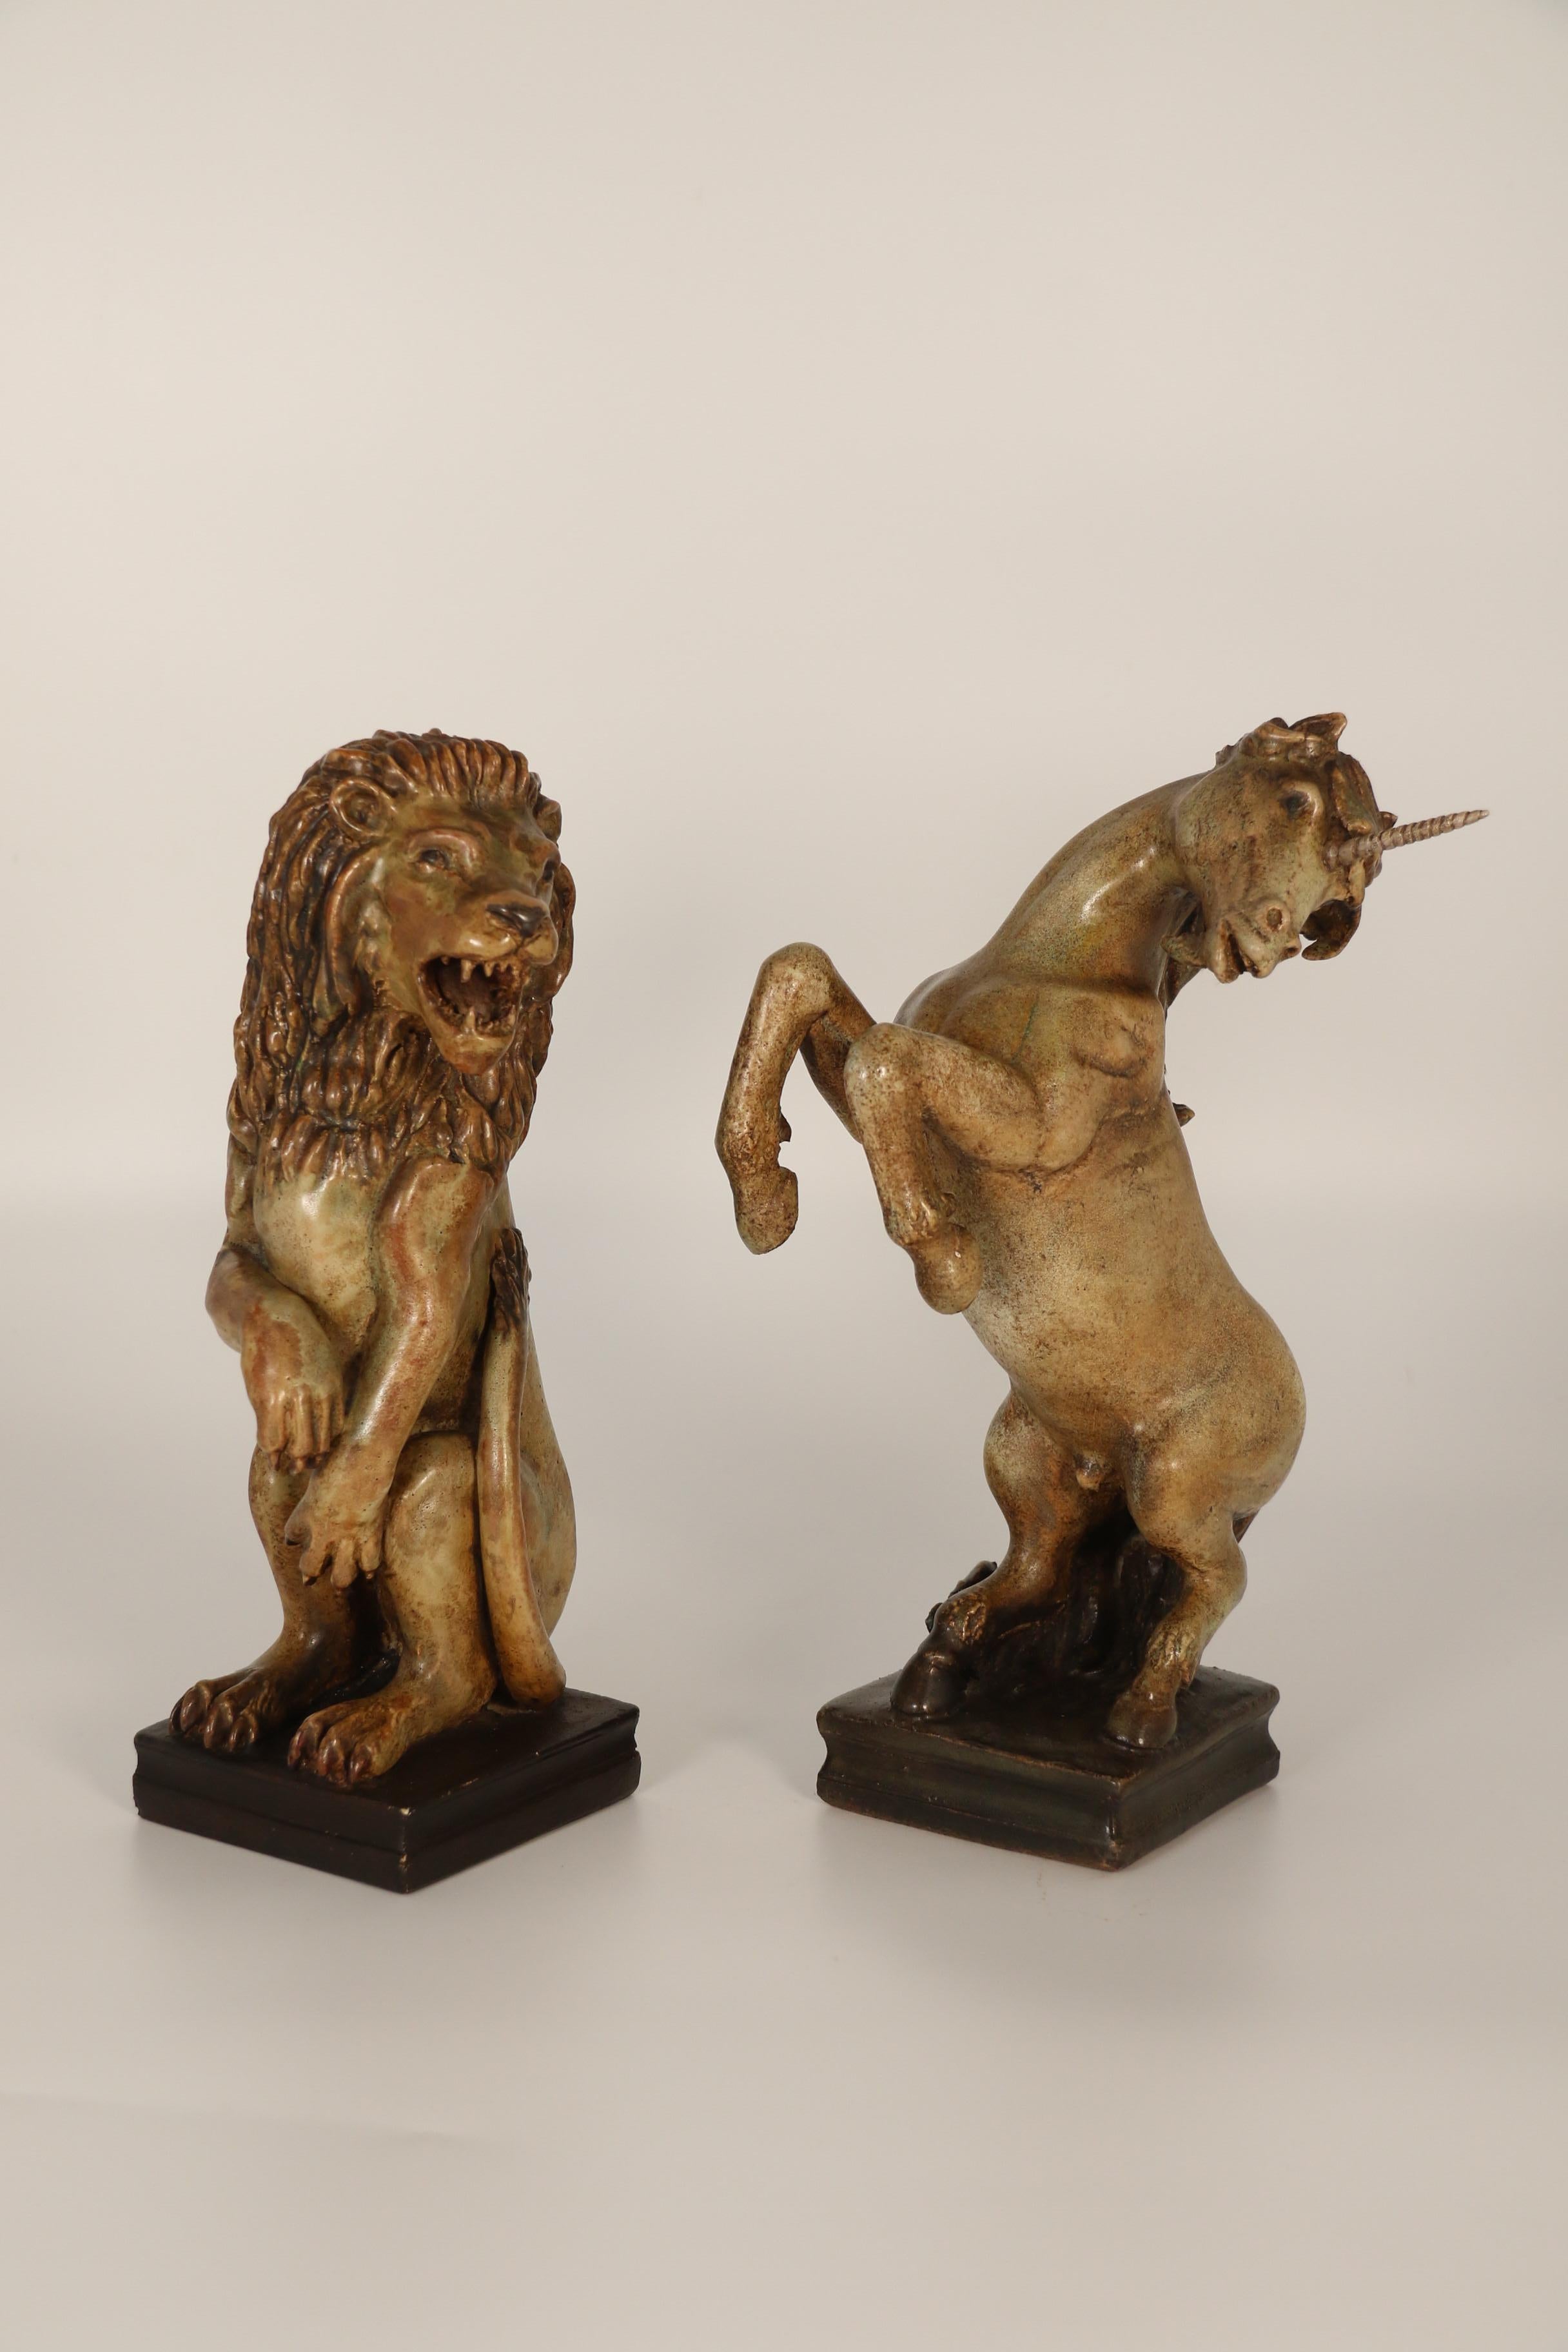 Ces magnifiques figures héraldiques d'un lion et d'une licorne en poterie sculptée à la main sont très inhabituelles.  Ils sont de fabrication européenne et ont vraisemblablement été fabriqués comme des pièces uniques, car il y a une légère